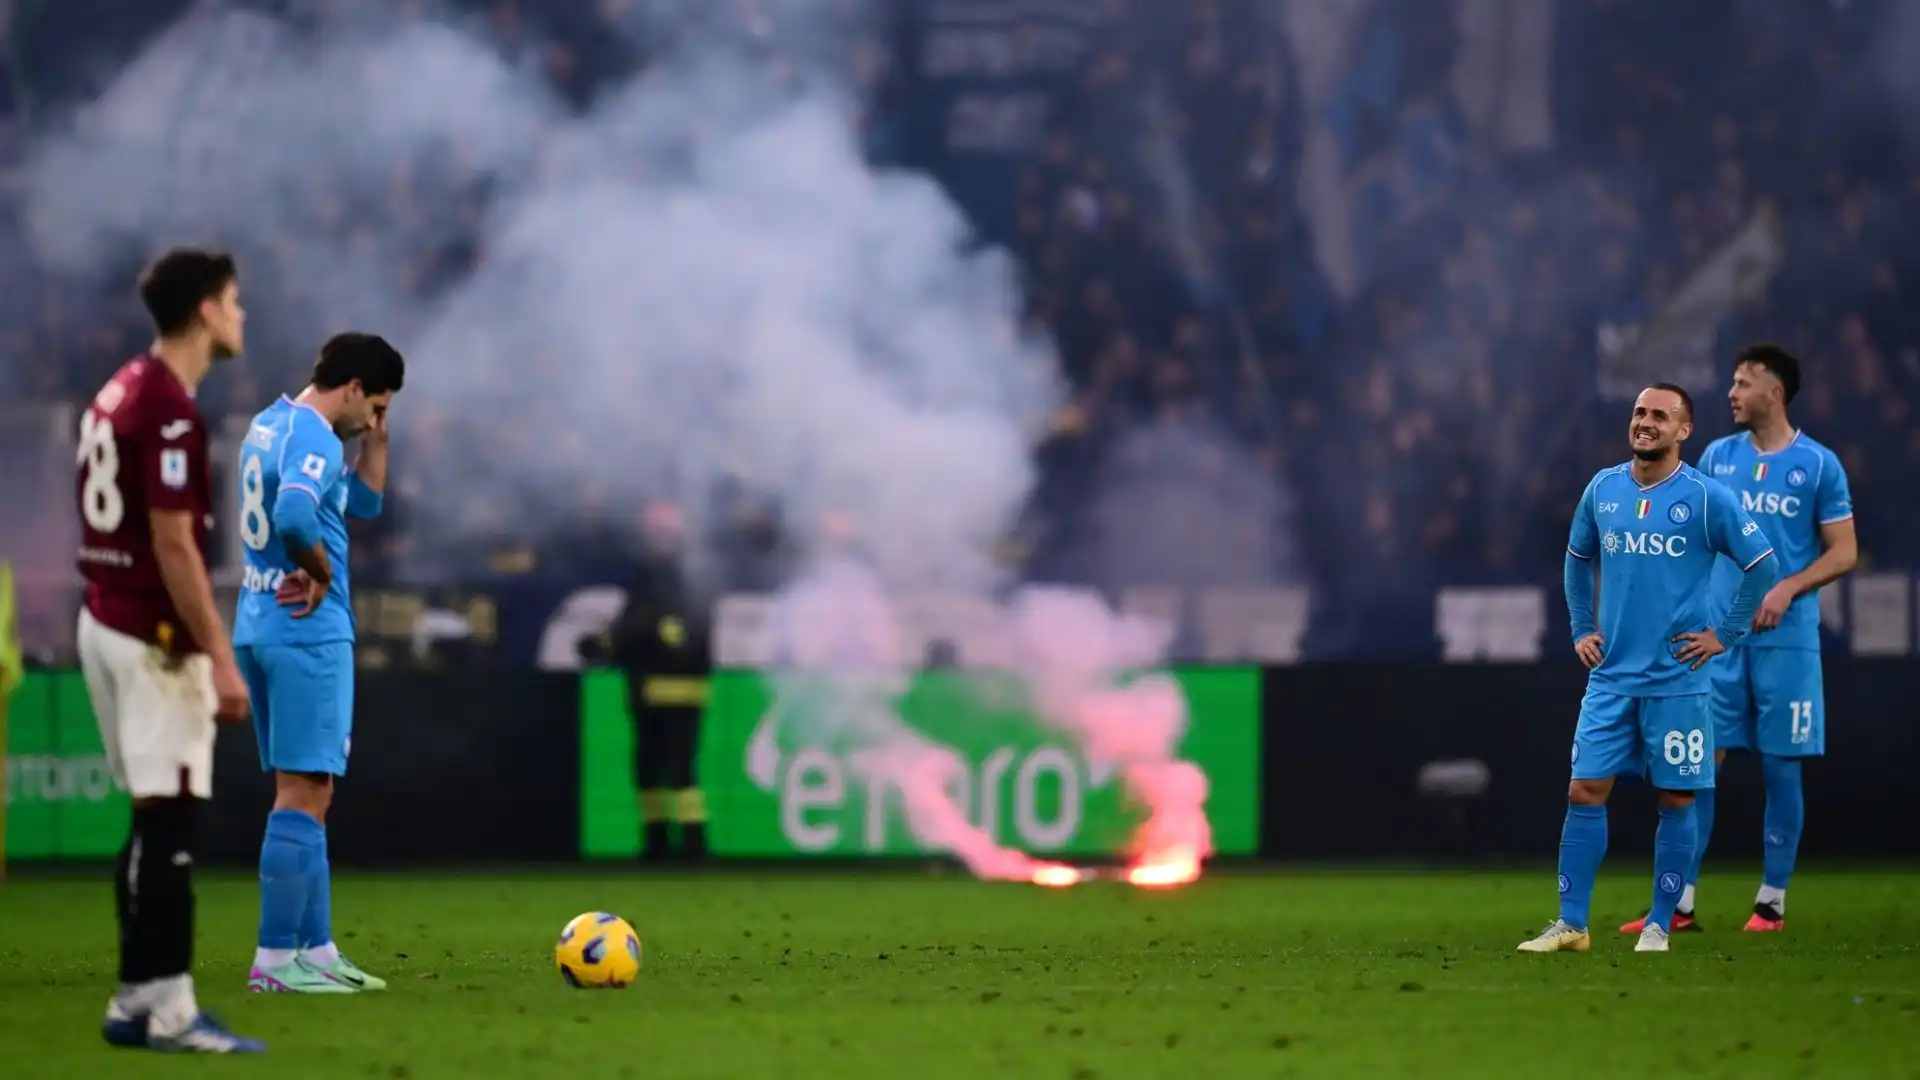 A Torino i campioni d'Italia sono stati travolti per 3-0 dai granata